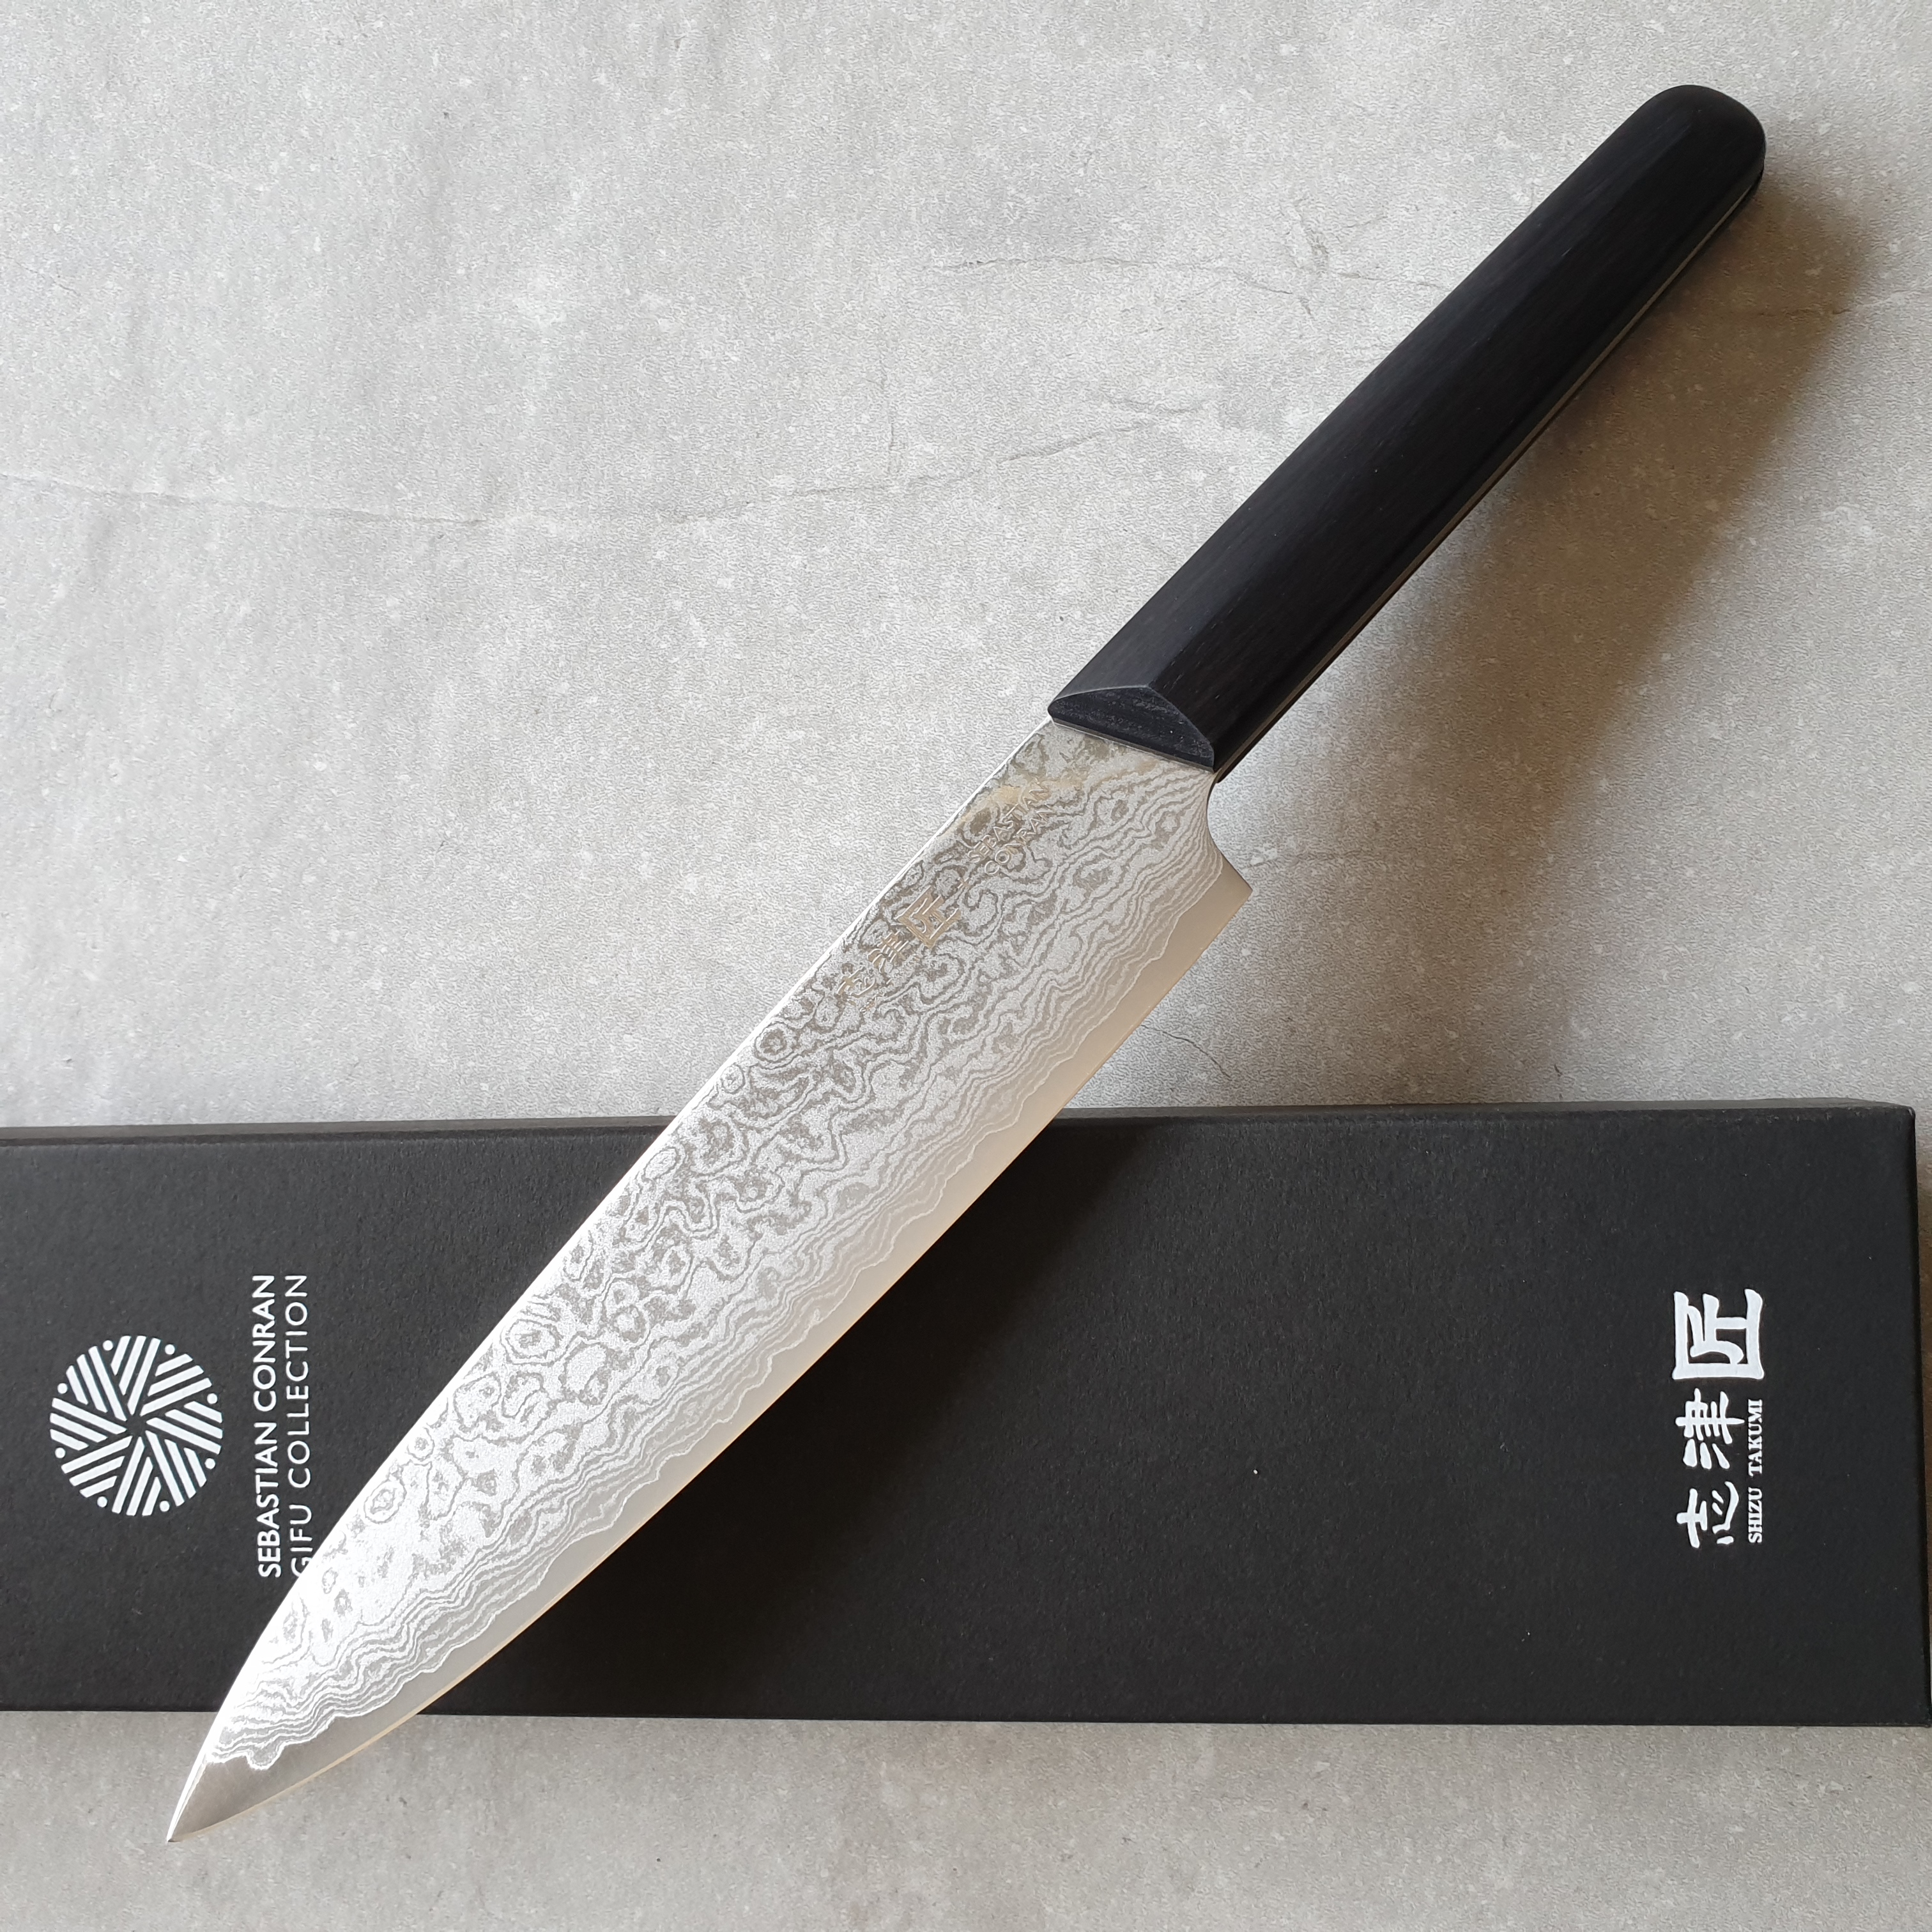 Shizu Hamono Sebastian Conran Gifu SC-1105 Universalmesser 16cm